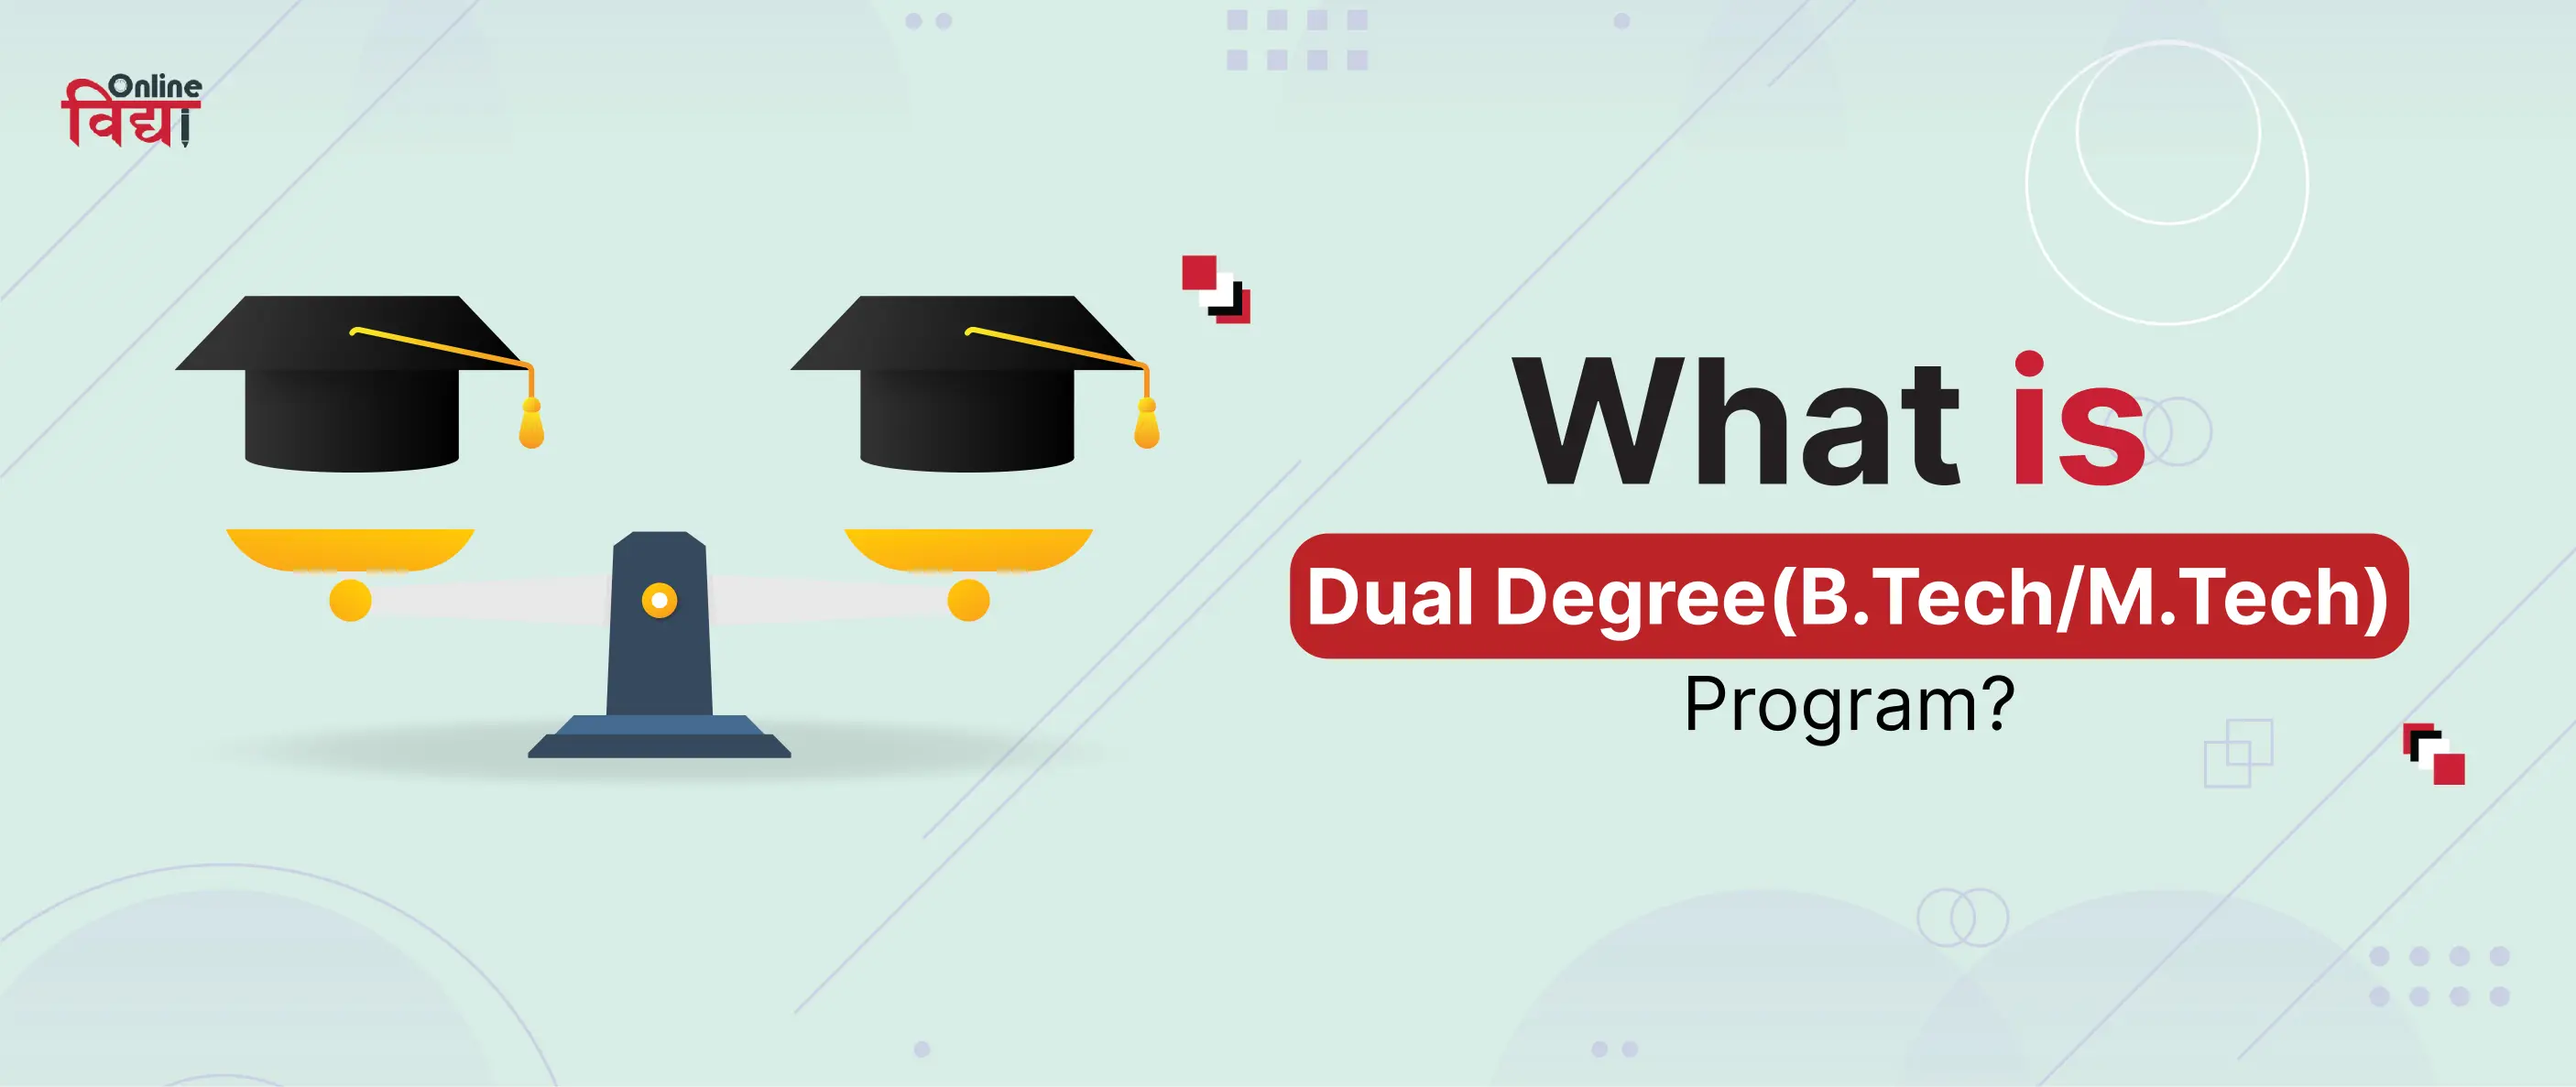 What is a dual degree (B.Tech / M.Tech) Program?